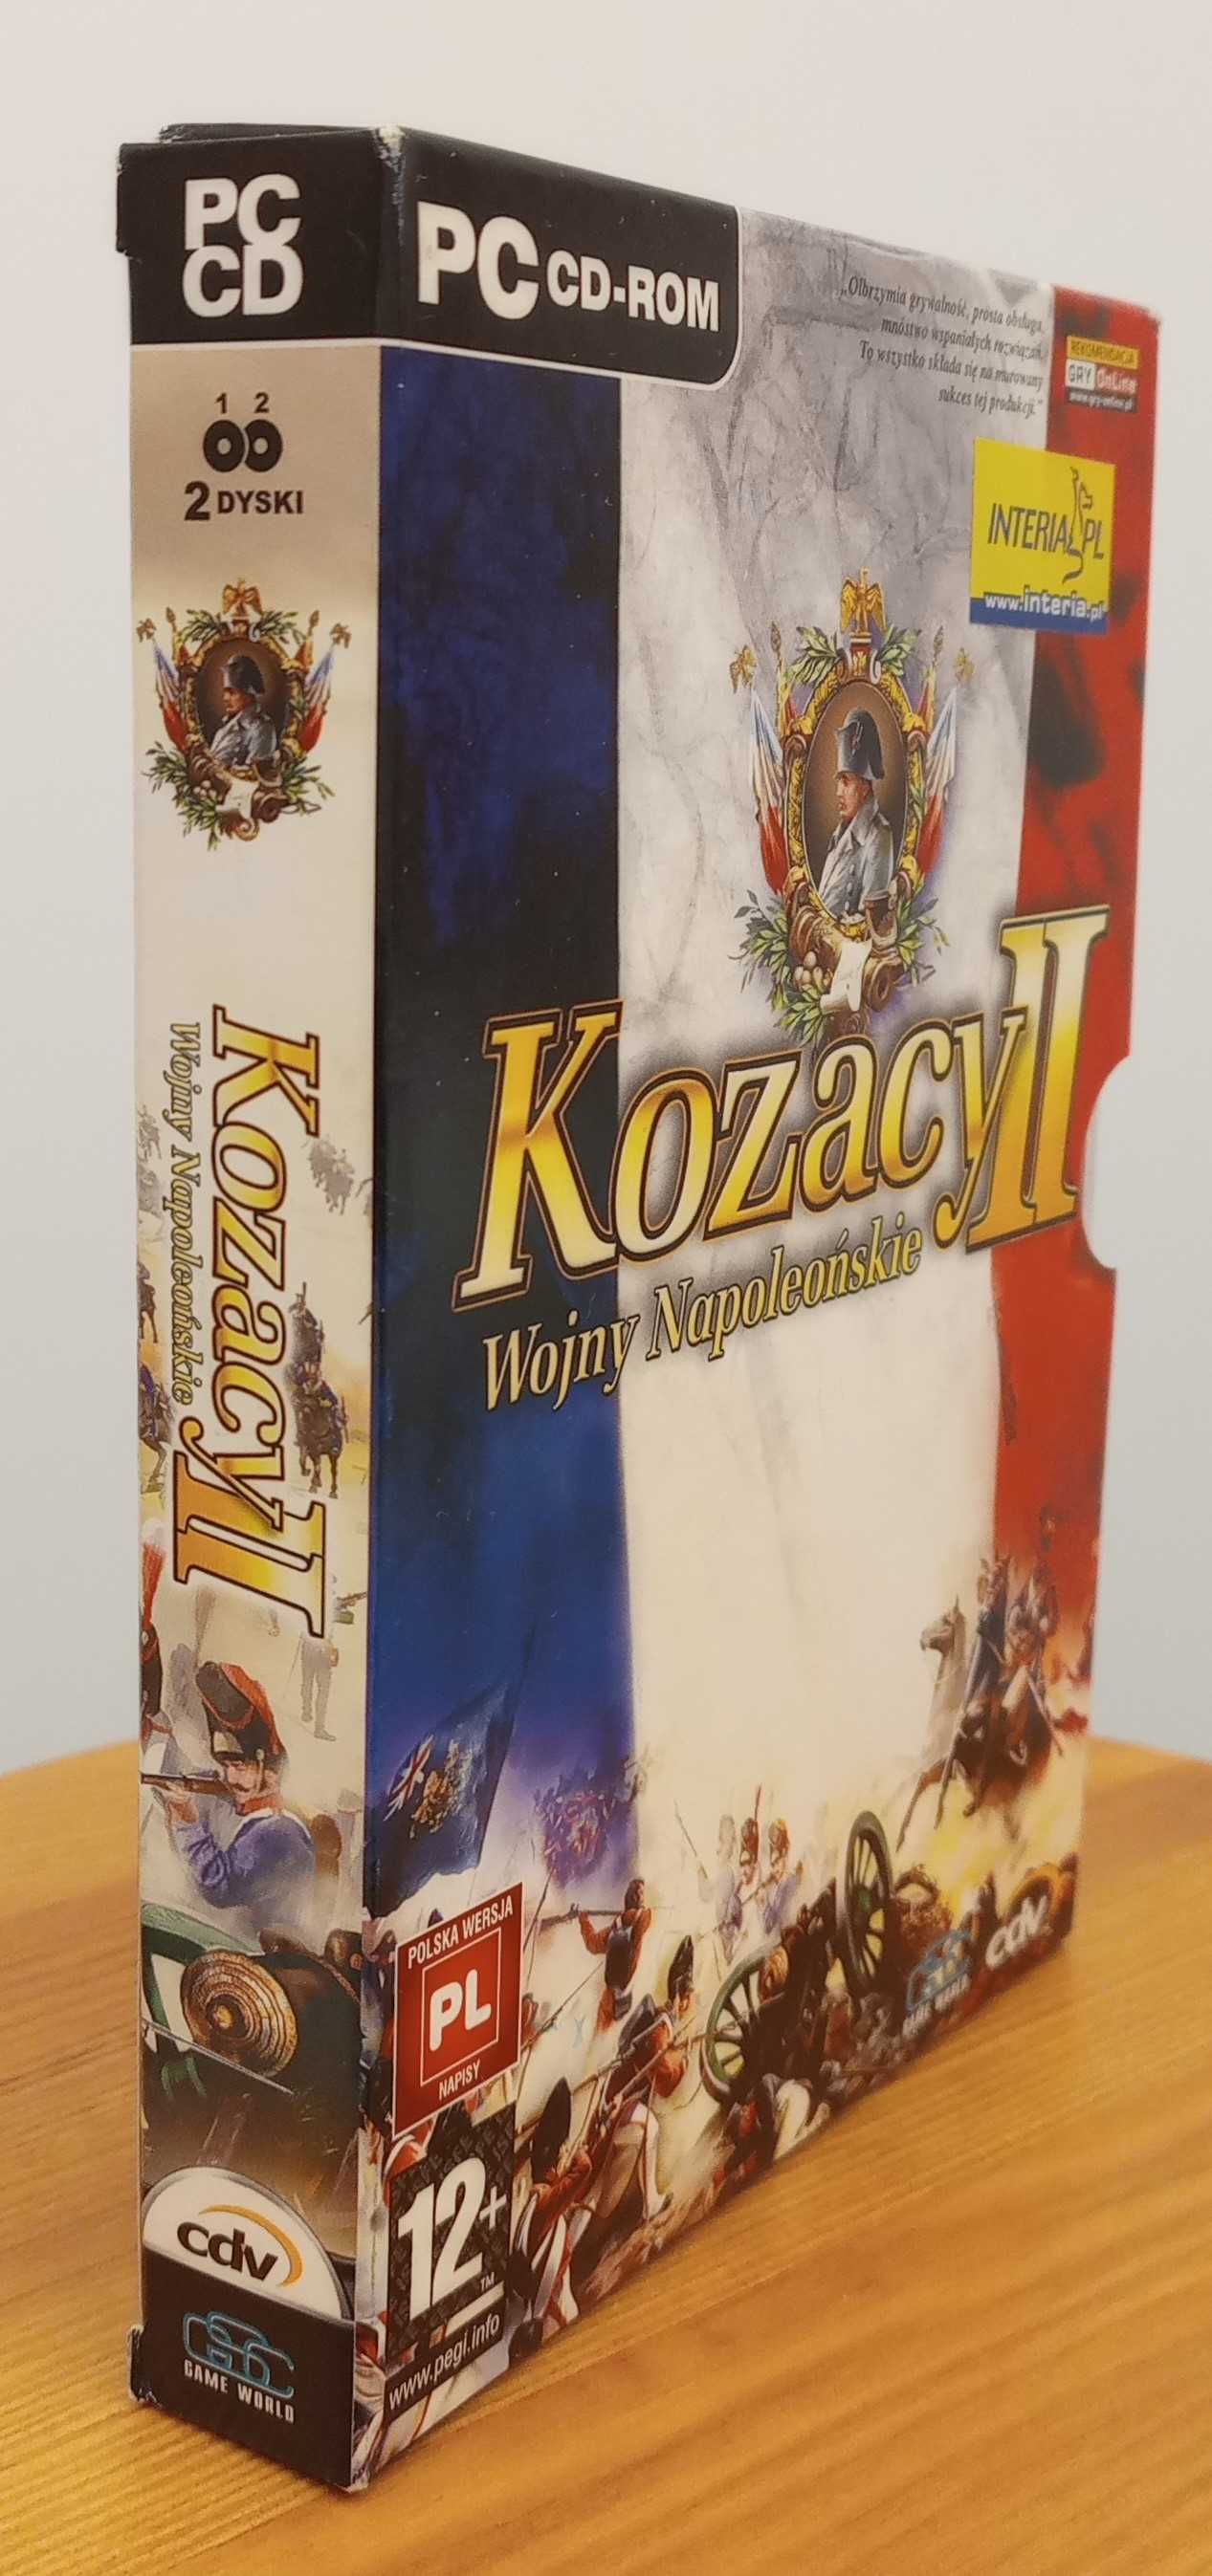 "Kozacy II. Wojny Napoleońskie" - gra PC - CD ROM